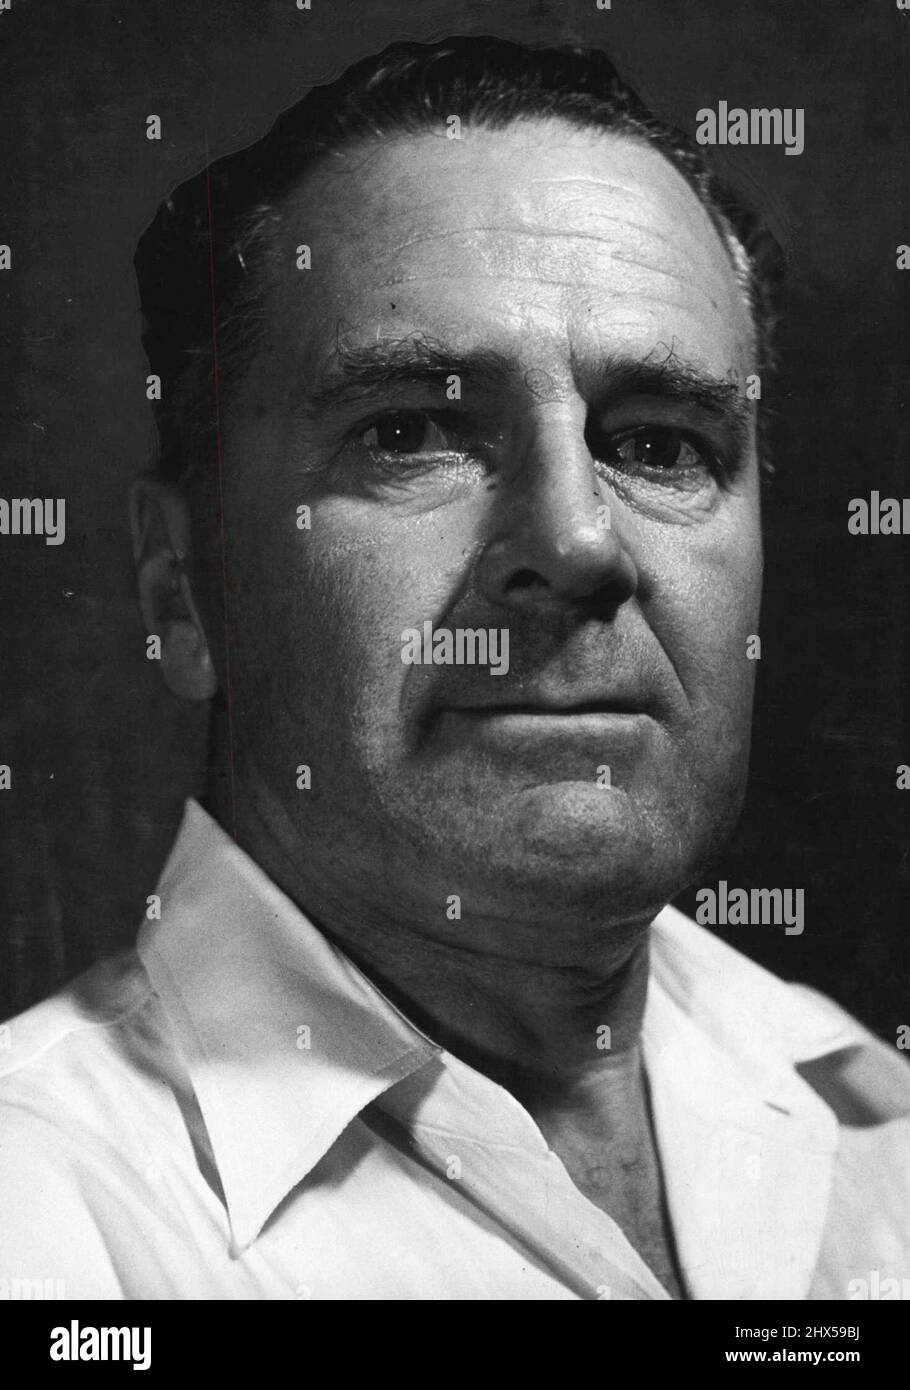 Sig. L.R. Martin - (Manager) -- Martin è il Tesoriere dell'Unione di rugby delle Fiji ed è nato in Australia. Durante la guerra del 1939-1945 si unì all'A.I.F. ed era prigioniero di guerra in Germania. È stato direttore della squadra di rugby delle Fiji che ha girato la Nuova Zelanda l'anno scorso. Manager -- responsabile del team Fijian Rugby Union, previsto a Sydney mercoledì prossimo, Sig. L.R. Martin è australiano - nato. Combatté anche con l'AIF ed era prigioniero di guerra in Germania. Ha gestito la squadra delle Fiji durante il loro tour della Nuova Zelanda lo scorso anno ed è tesoriere dell'Unione di rugby delle Fiji. Giugno 26, 1952 Foto Stock